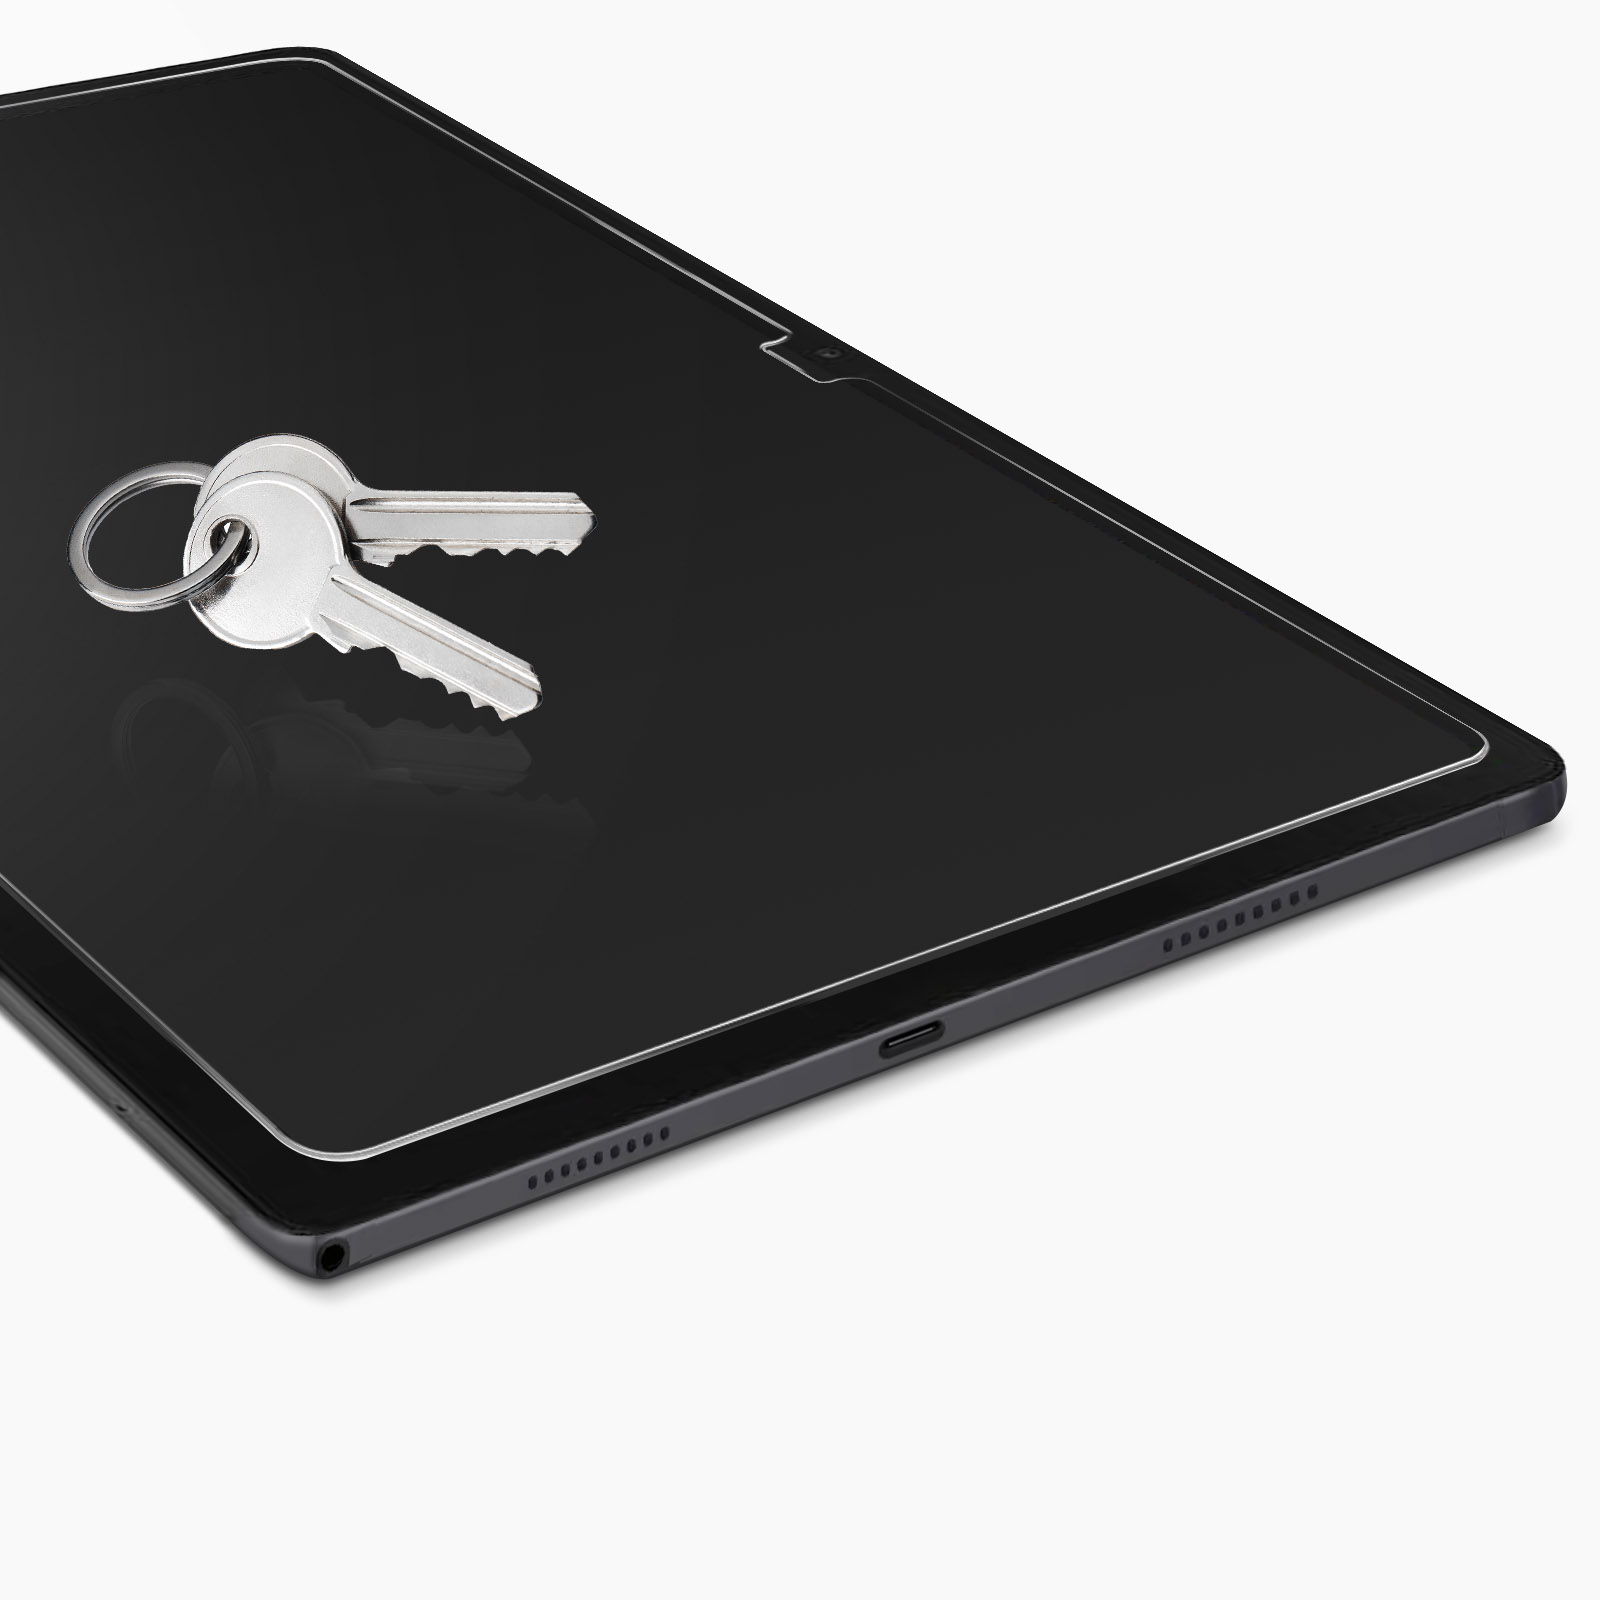 SPARIN Verre Trempé Compatible avec Samsung Galaxy Tab A8 10,5